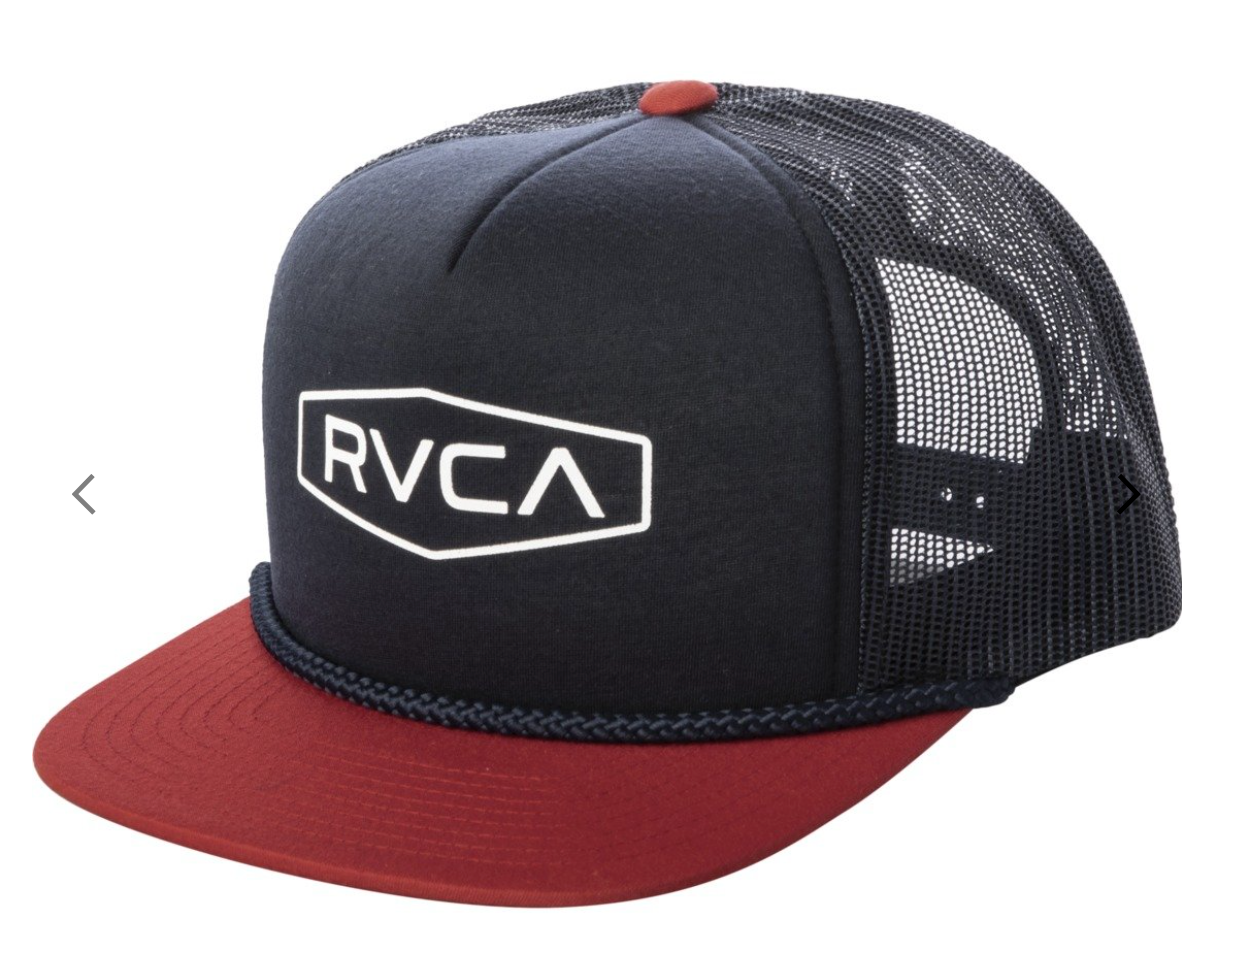 RVCA Staple Foamy Trucker Hat - Navy Red